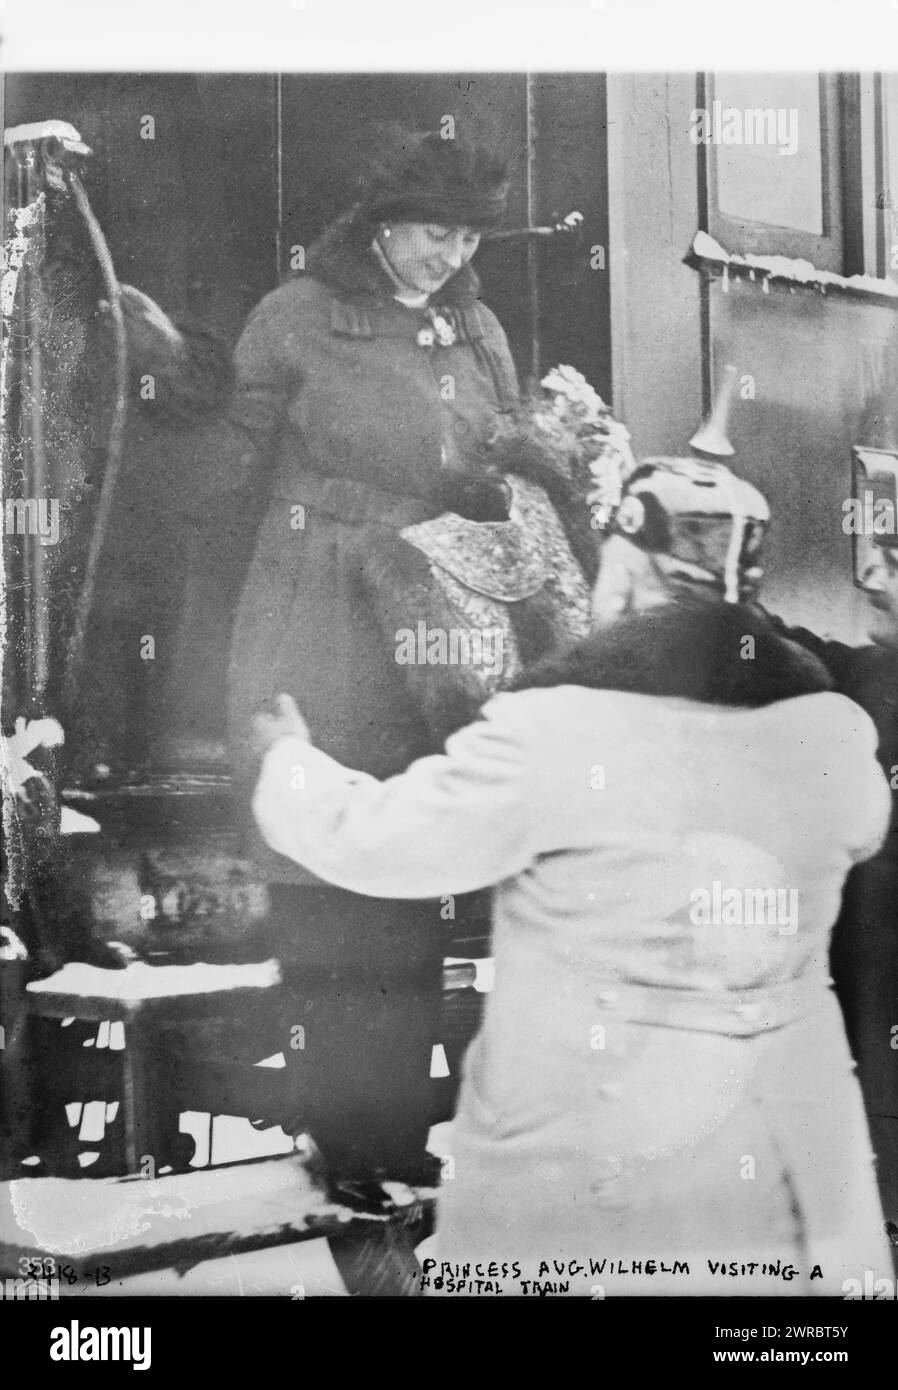 Prinzessin Aug Wilhelm besucht einen Krankenhauszug, Foto zeigt wahrscheinlich Victoria Louise von Preußen (die Herzogin von Braunschweig), Tochter Wilhelms II Kaiser von Deutschland stieg während des Ersten Weltkriegs aus einem Zug aus, zwischen 1914 und ca. 1915, Weltkrieg, 1914-1918, Glasnegative, 1 negativ: Glas Stockfoto